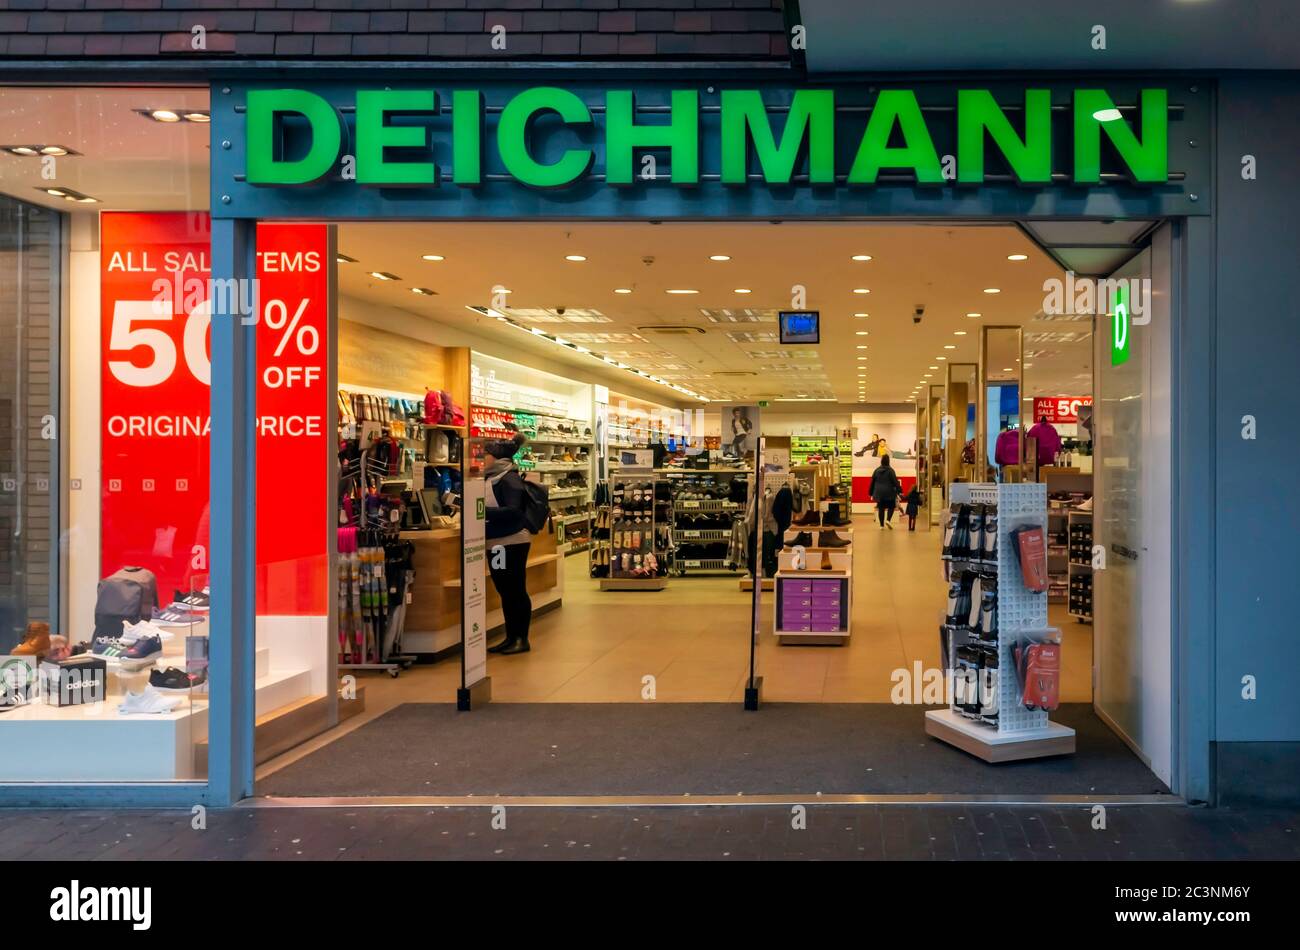 Et centralt værktøj, der spiller en vigtig rolle Streng bakke Deichmann Shoe Store High Resolution Stock Photography and Images - Alamy